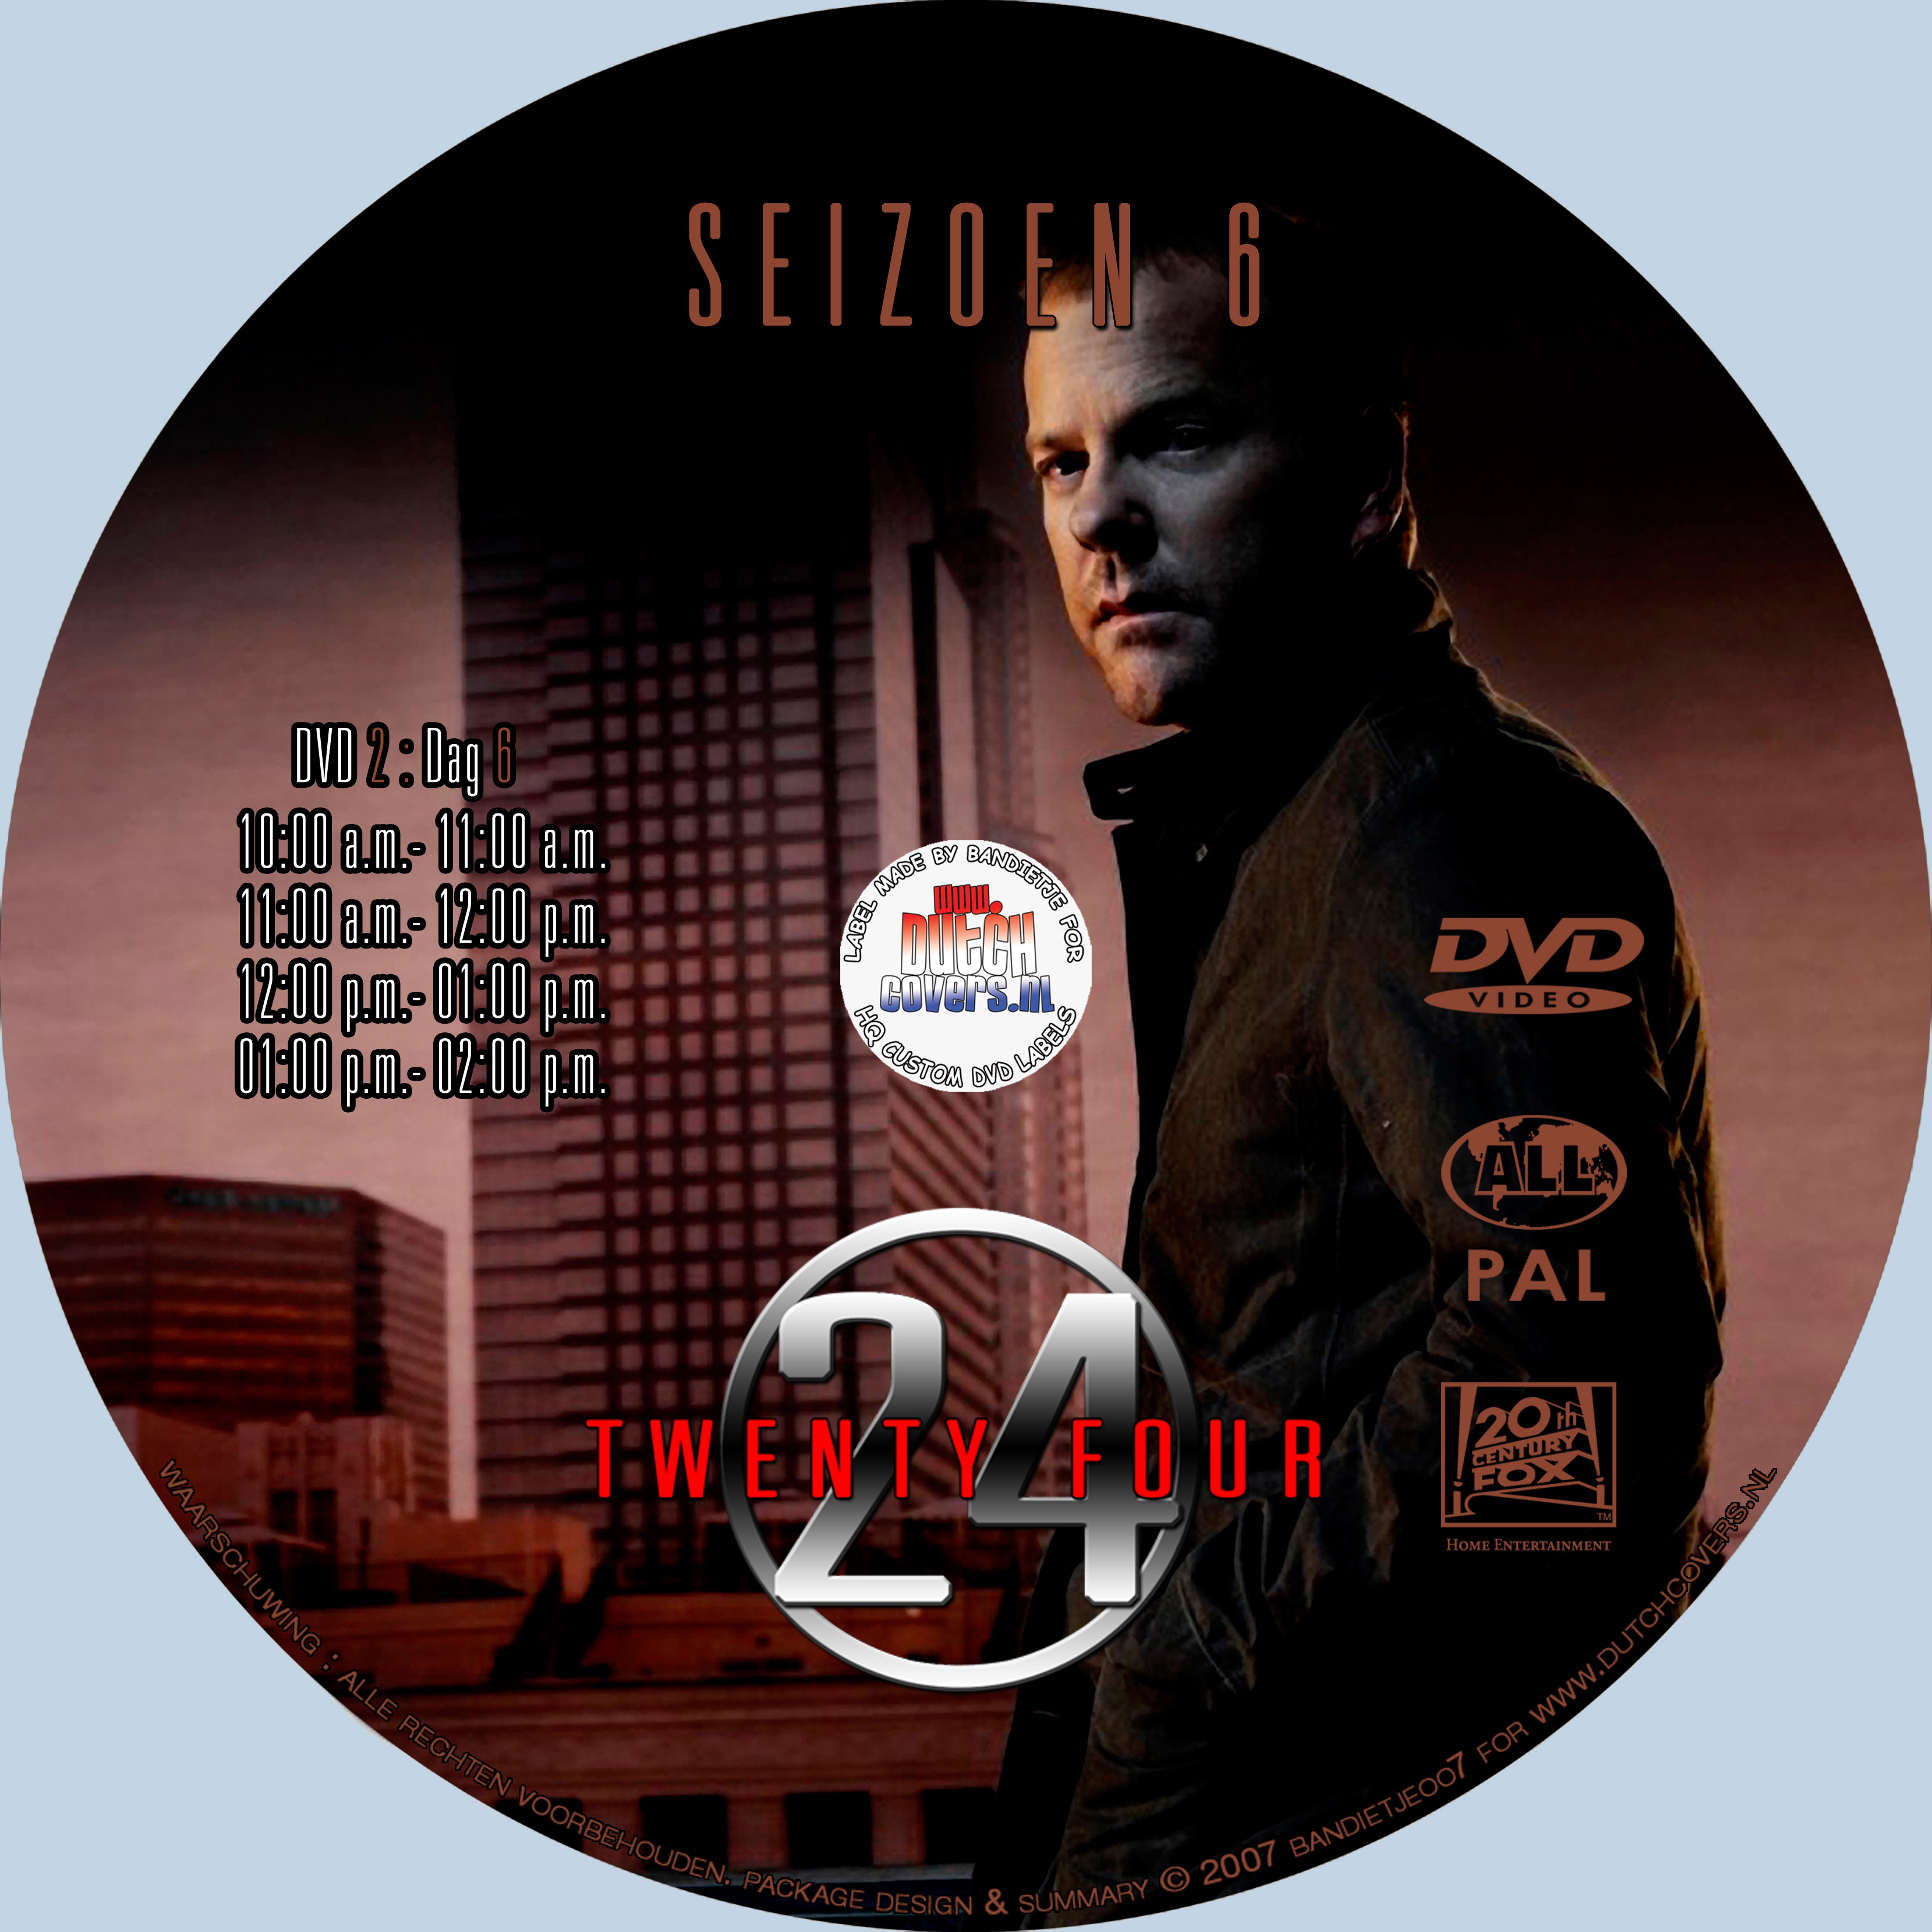 24 seizoen 6 disc 2 label